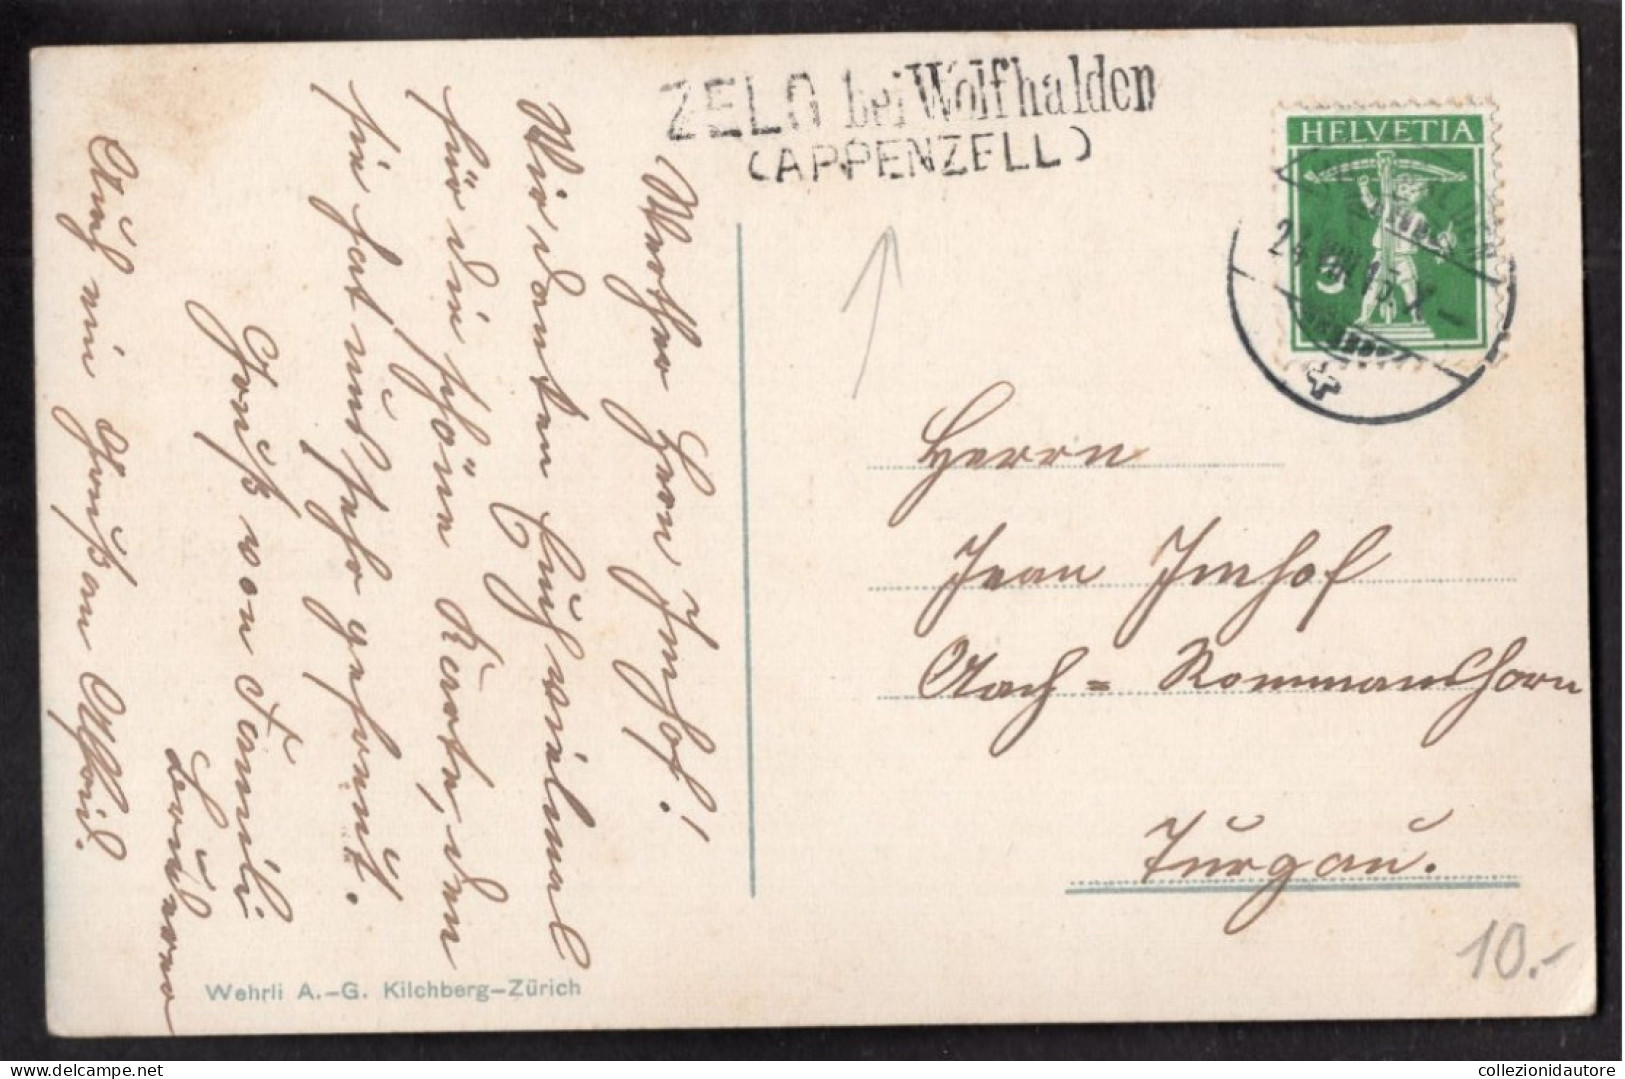 SWITZERLAND - APPENZELL UND ALPSTEIN - CARTOLINA FP SPEDITA IL 24.08.1915 TIMBRO DI ZELG BEI WOLFHALDEN - Appenzell